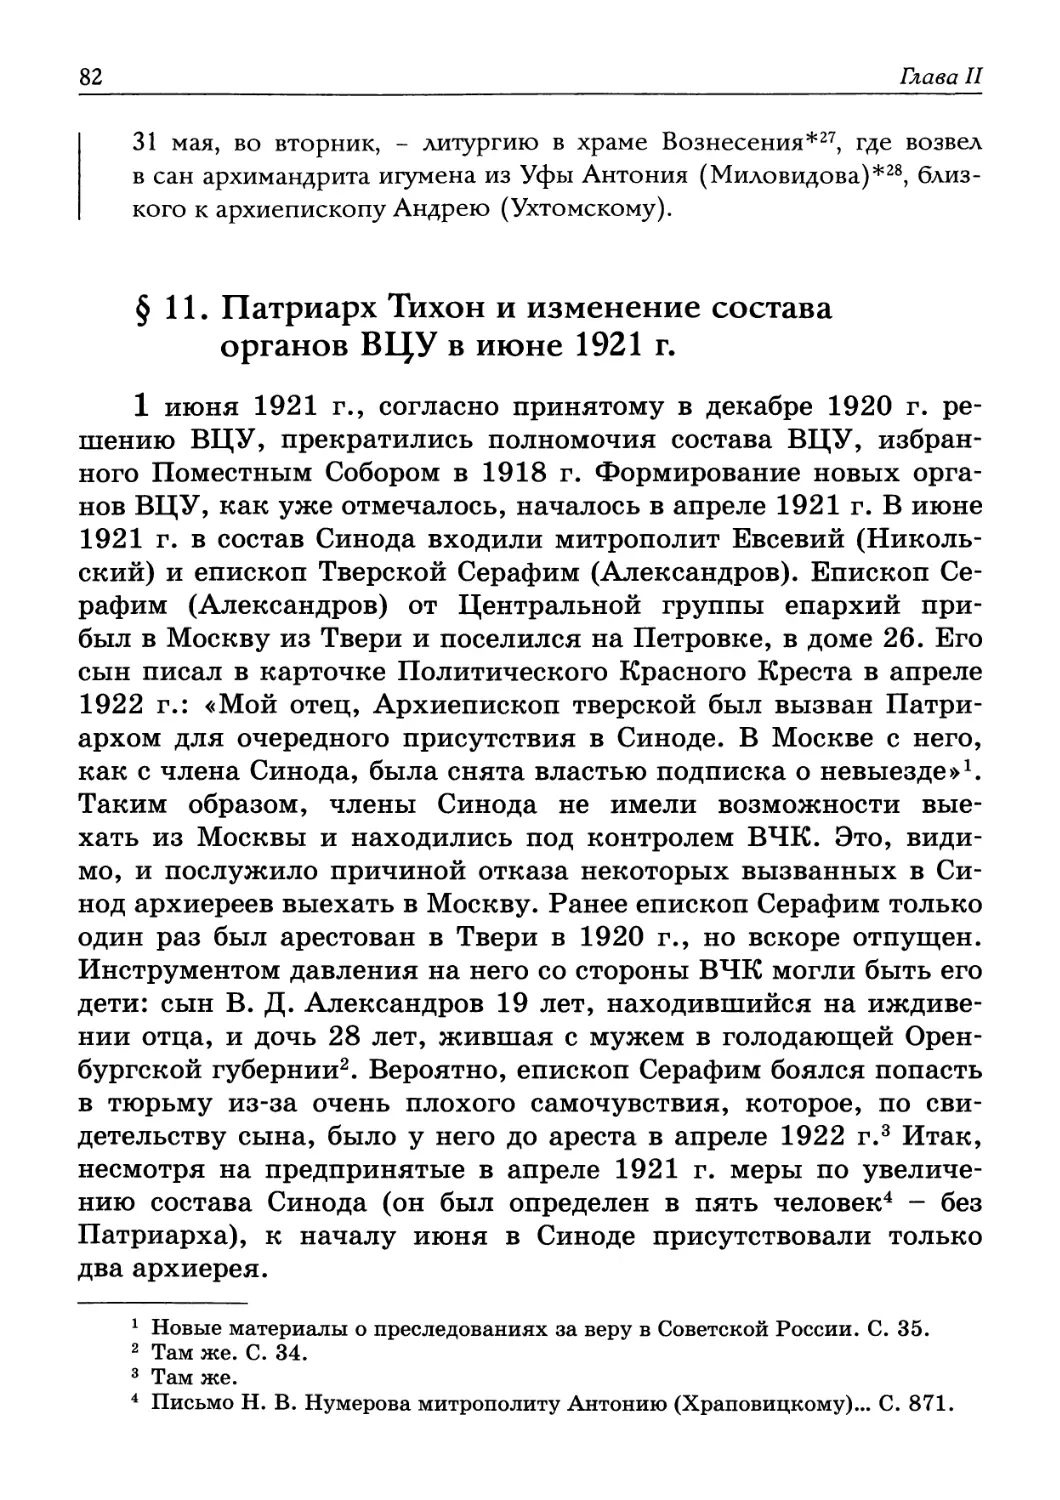 § 11. Патриарх Тихон и изменение состава органов ВЦУ в июне 1921 г.